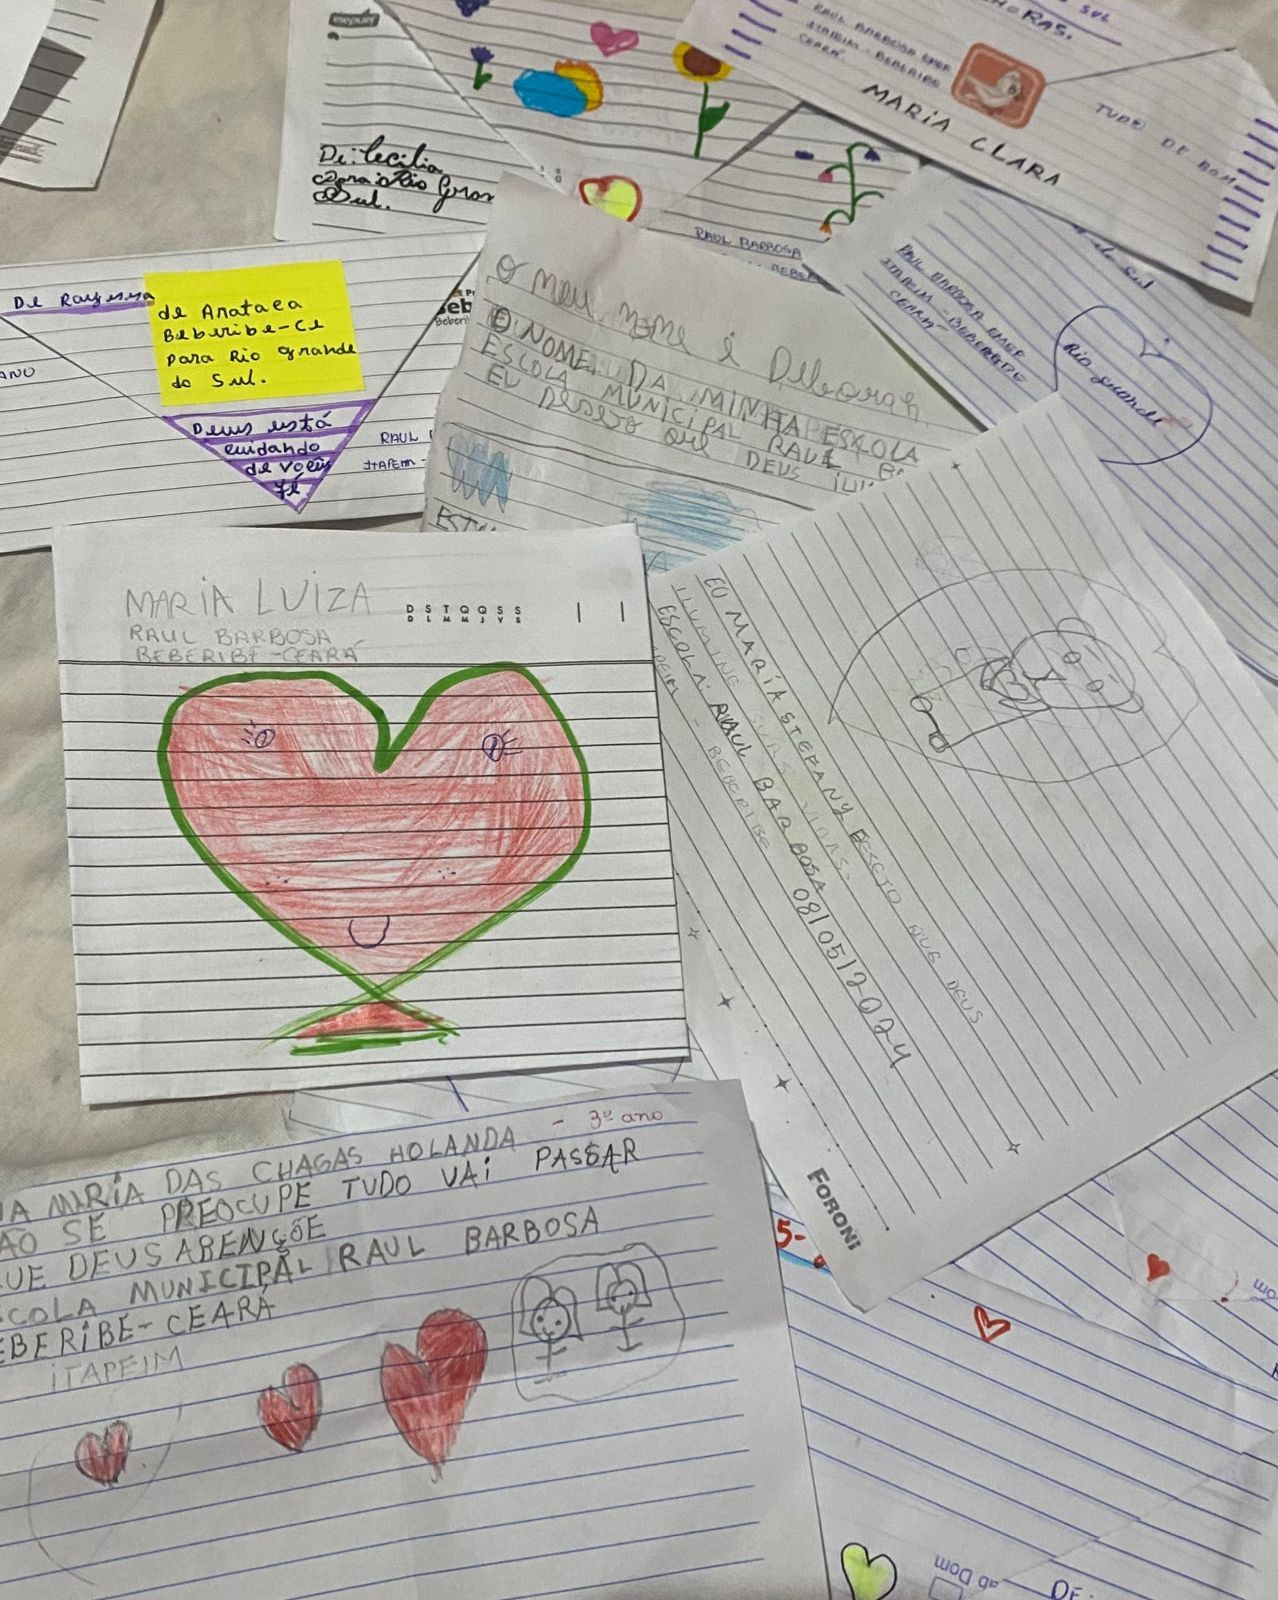 Alunos de escola no Ceará escrevem cartas com mensagens de apoio em doações ao Rio Grande do Sul